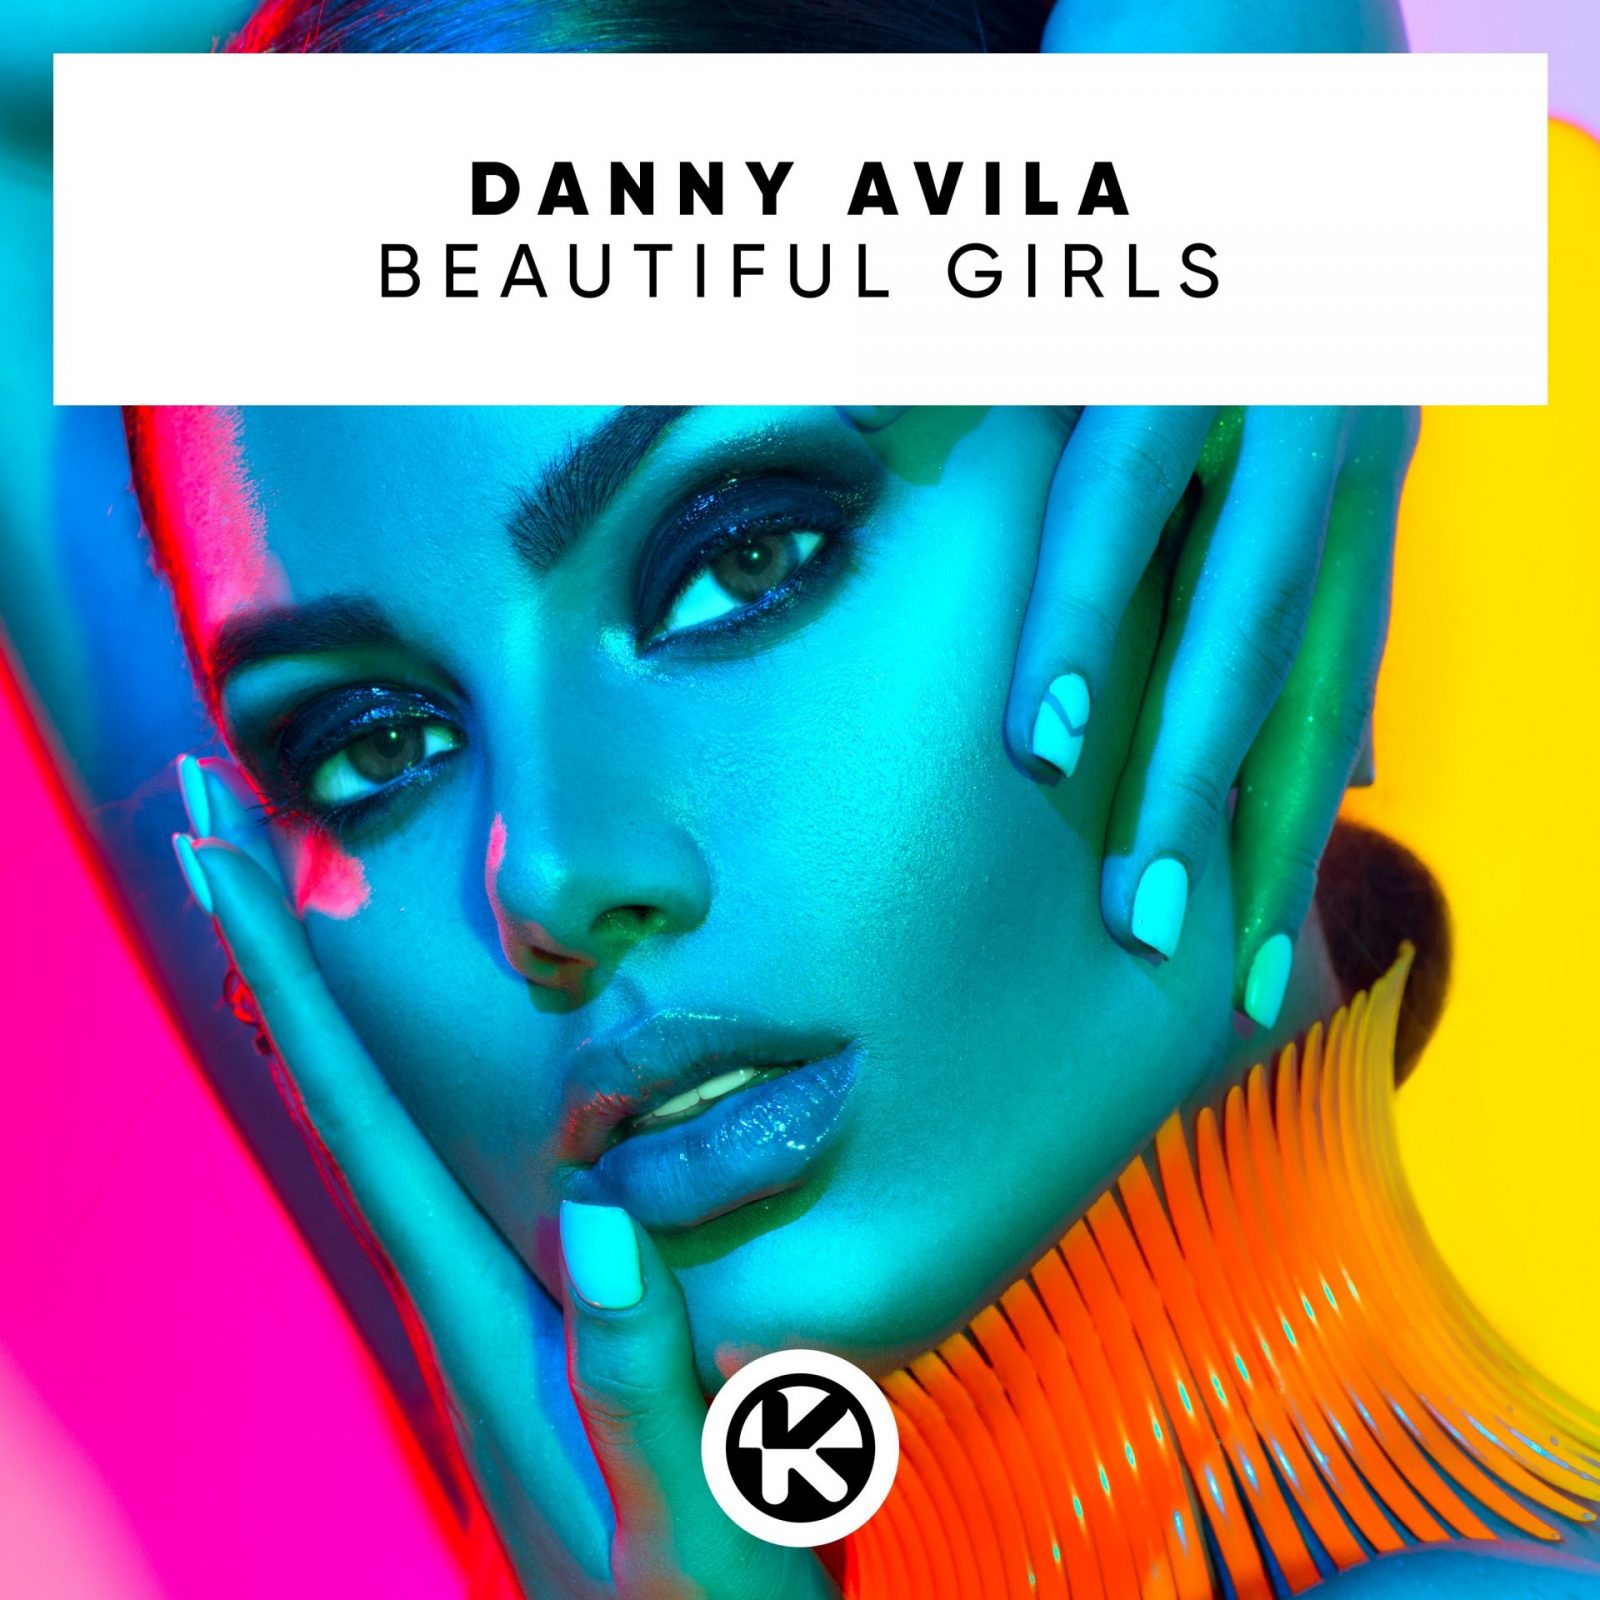 DANNY AVILA "Beautiful Girls"